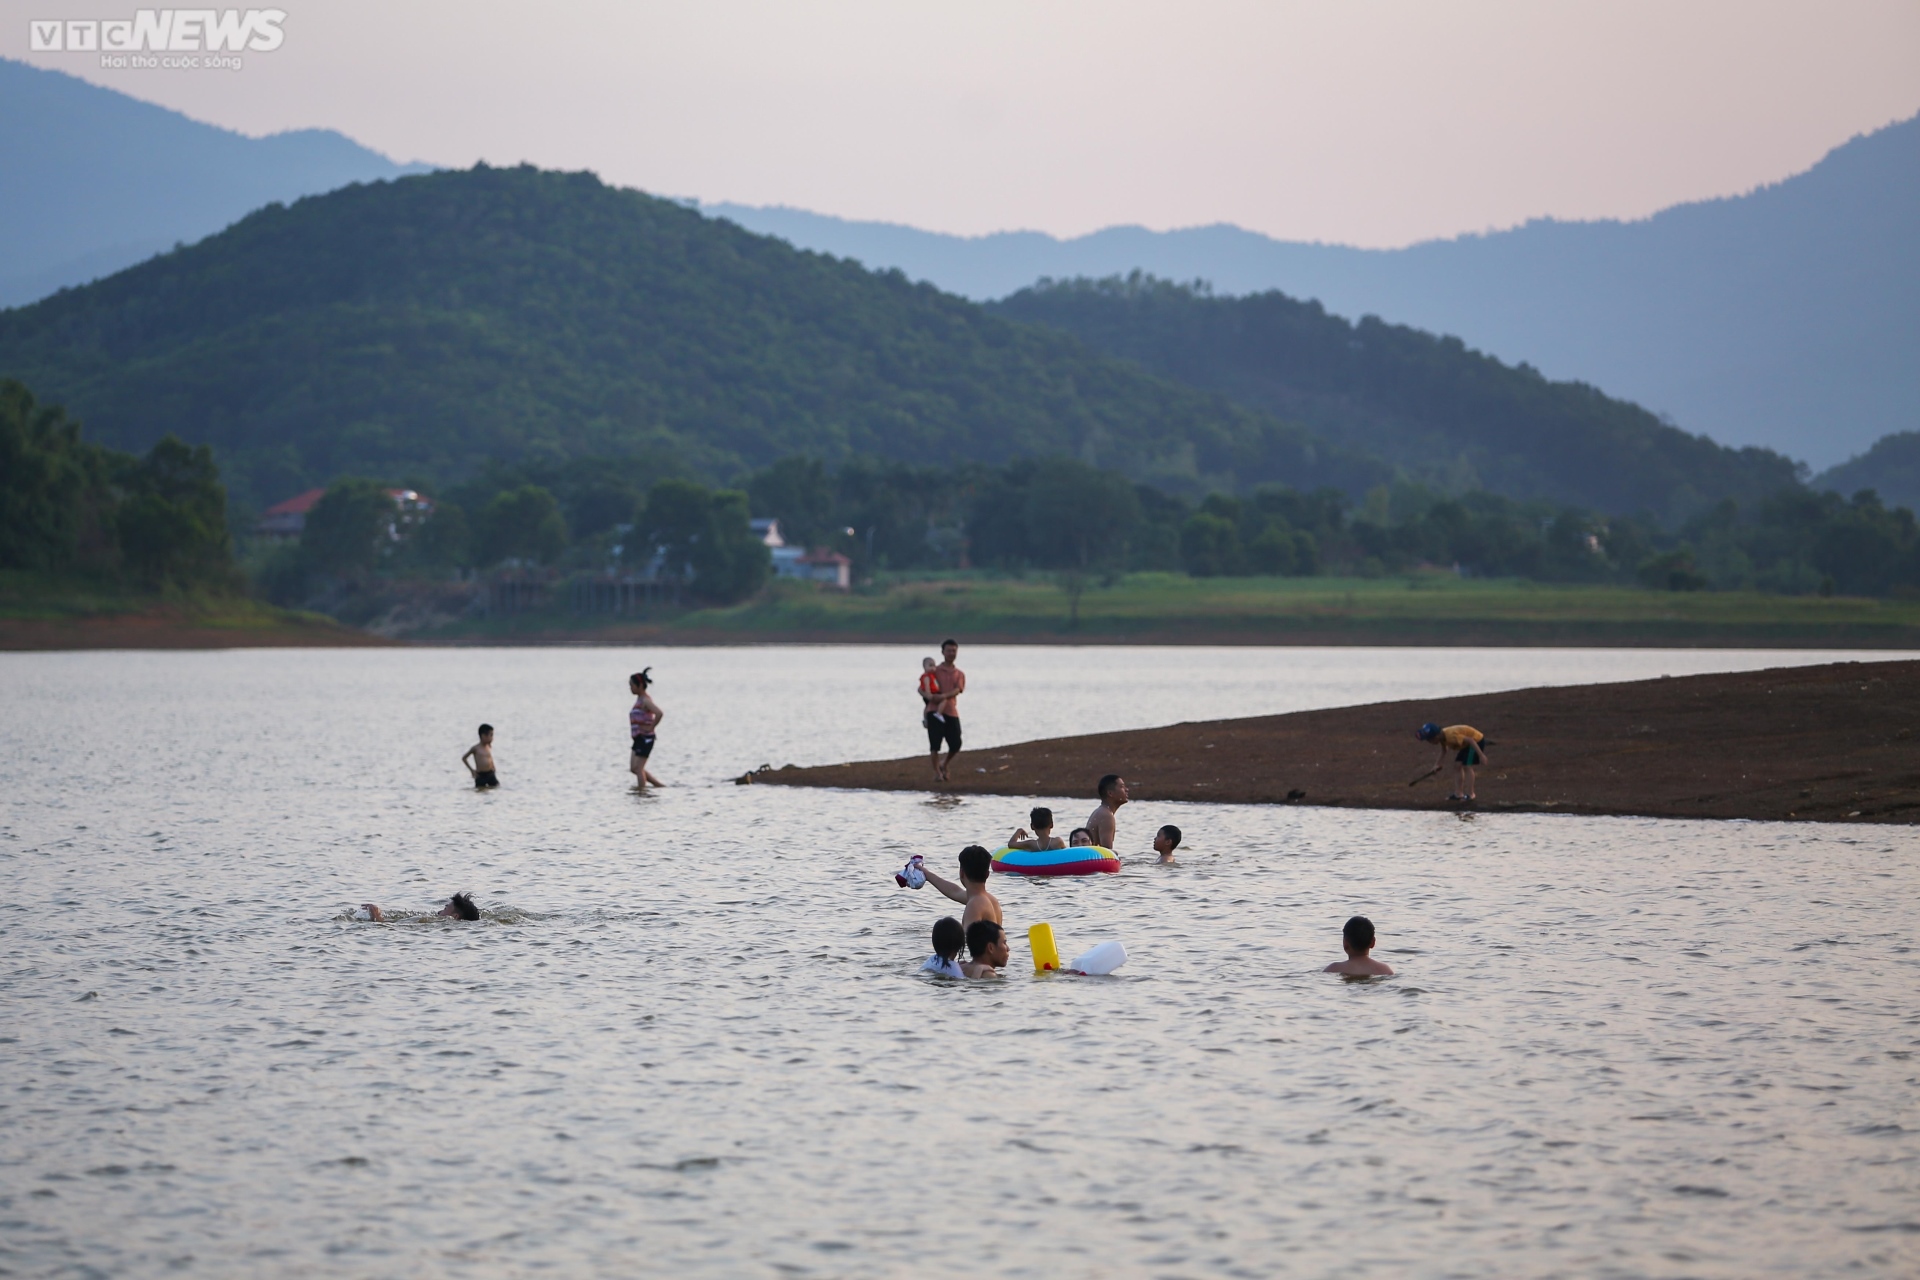 Chiều hè đổ lửa, người dân Hà Nội tìm sông hồ giải nhiệt - ảnh 7